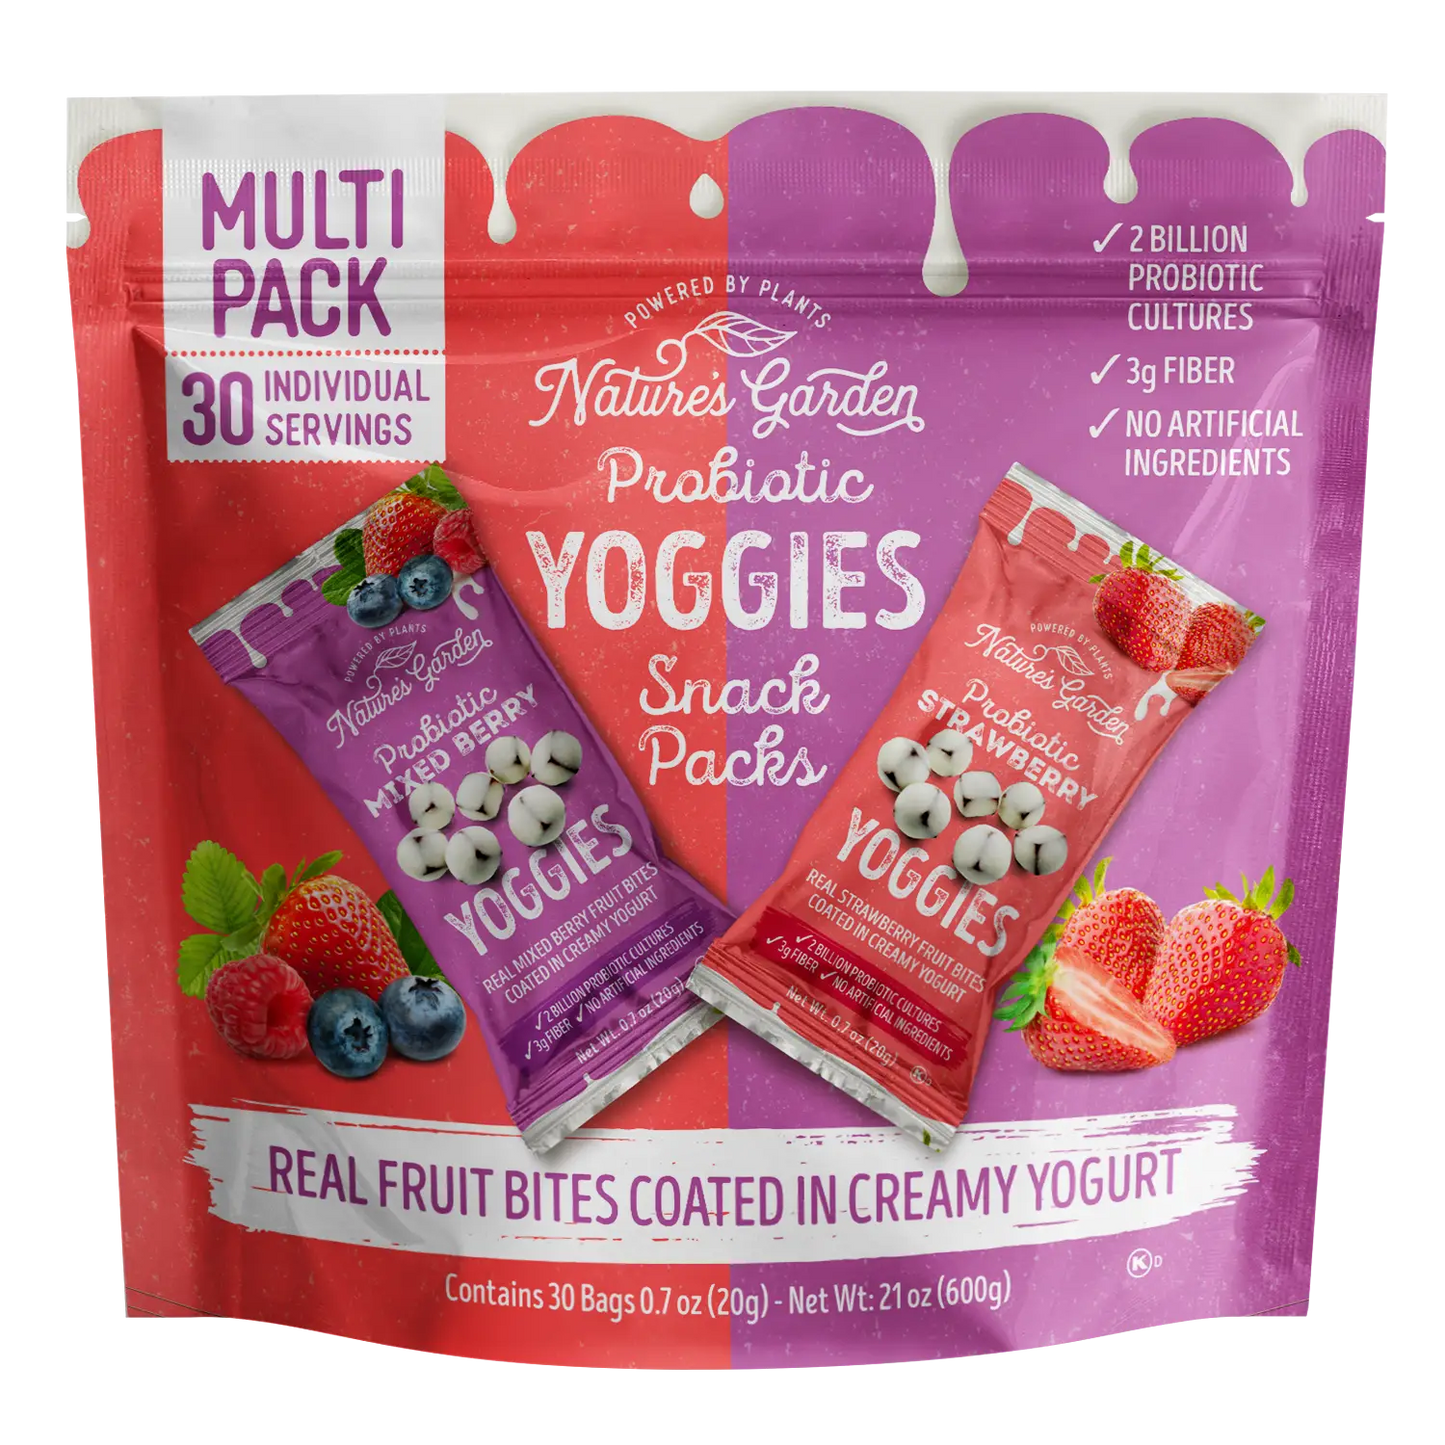 Probiotic Yoggies Snack Pack